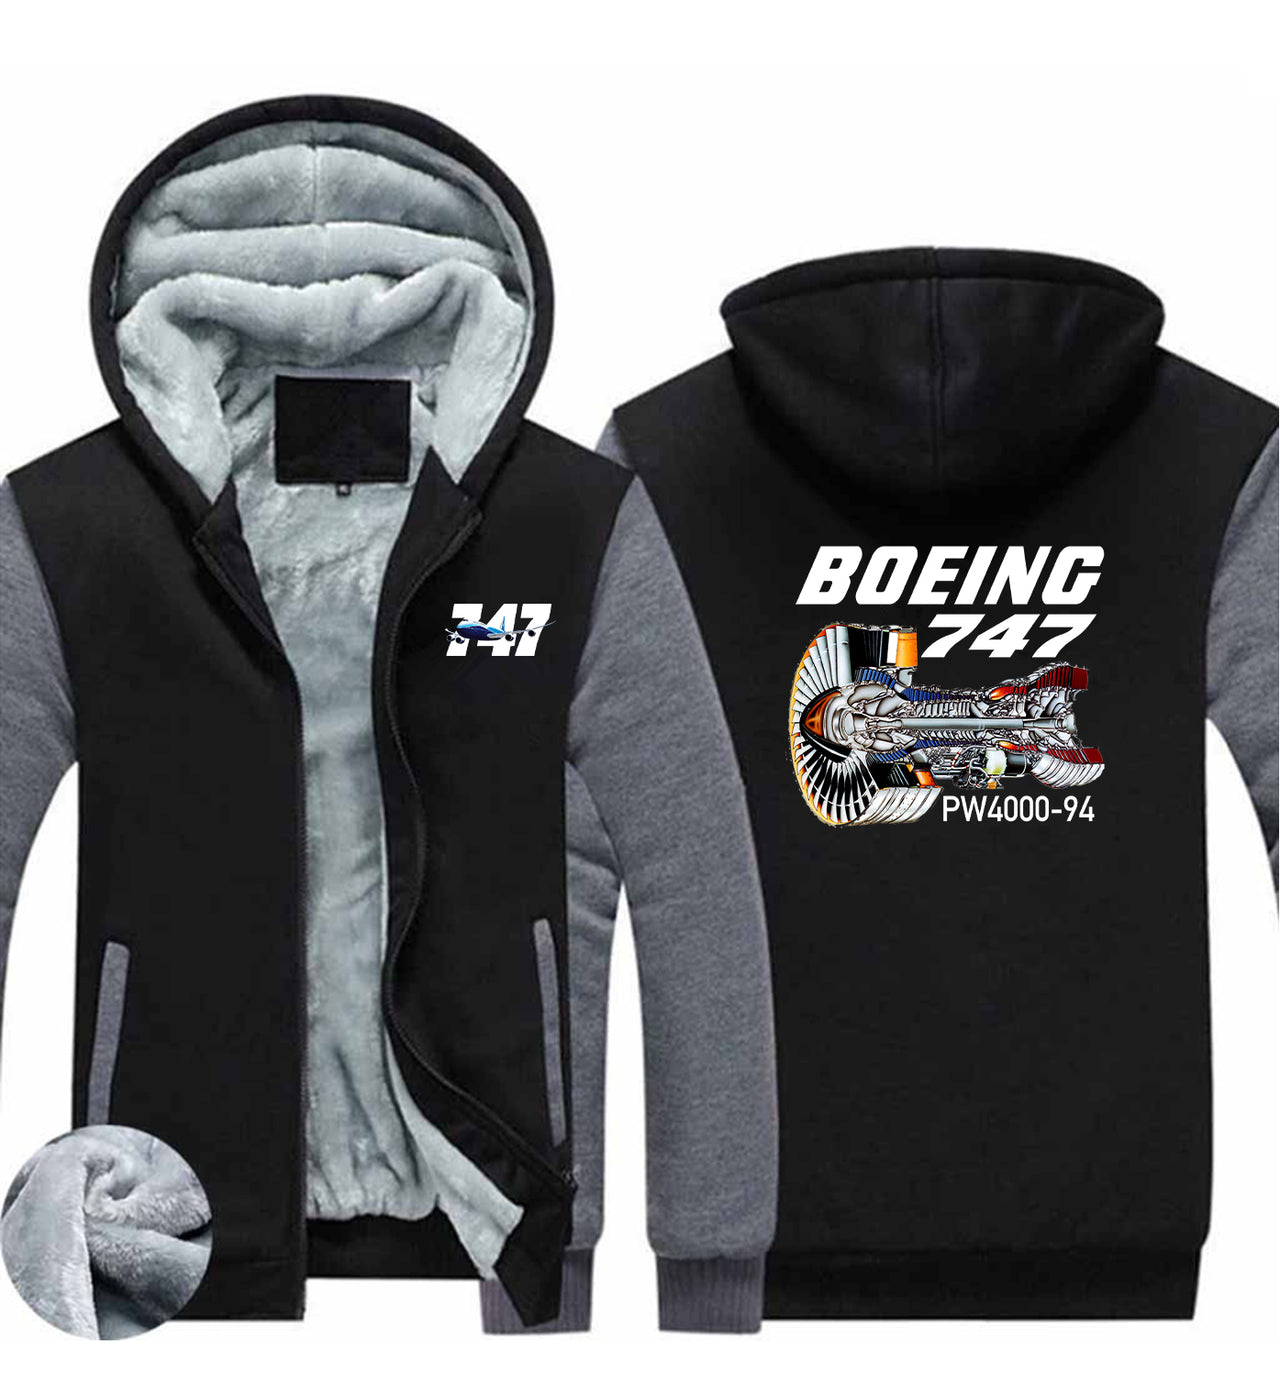 Boeing 747 & PW4000-94 Engine Designed Zipped Sweatshirts